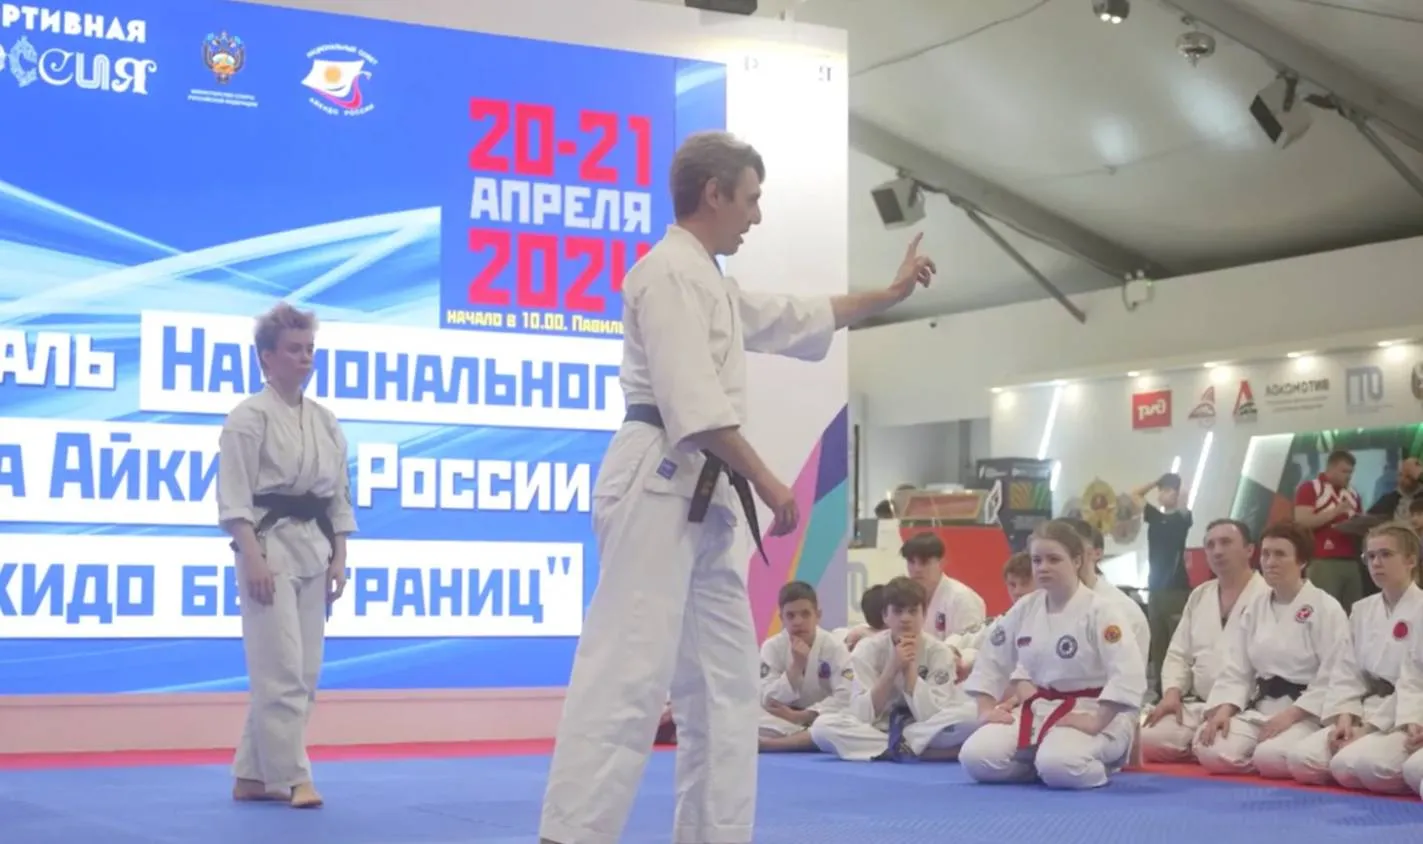 На выставке "Россия" стартовал спортивный фестиваль "Айкидо без границ"